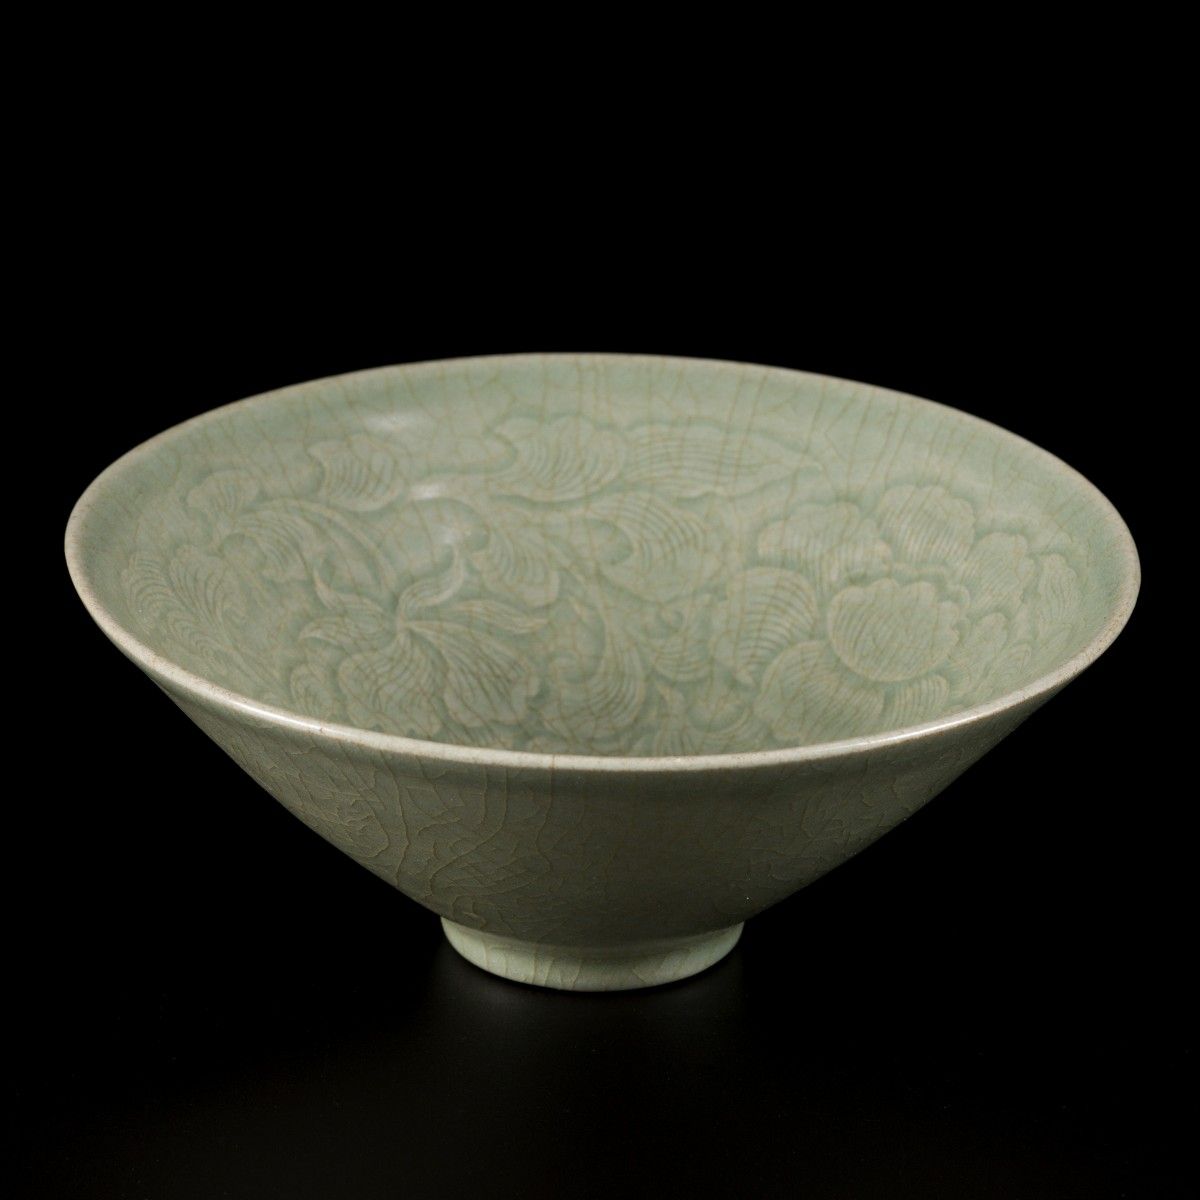 A celadon bowl, Korea, 15 century. Dim. 6 x 16 cm. Estimación: 1500 € - 2500 €.